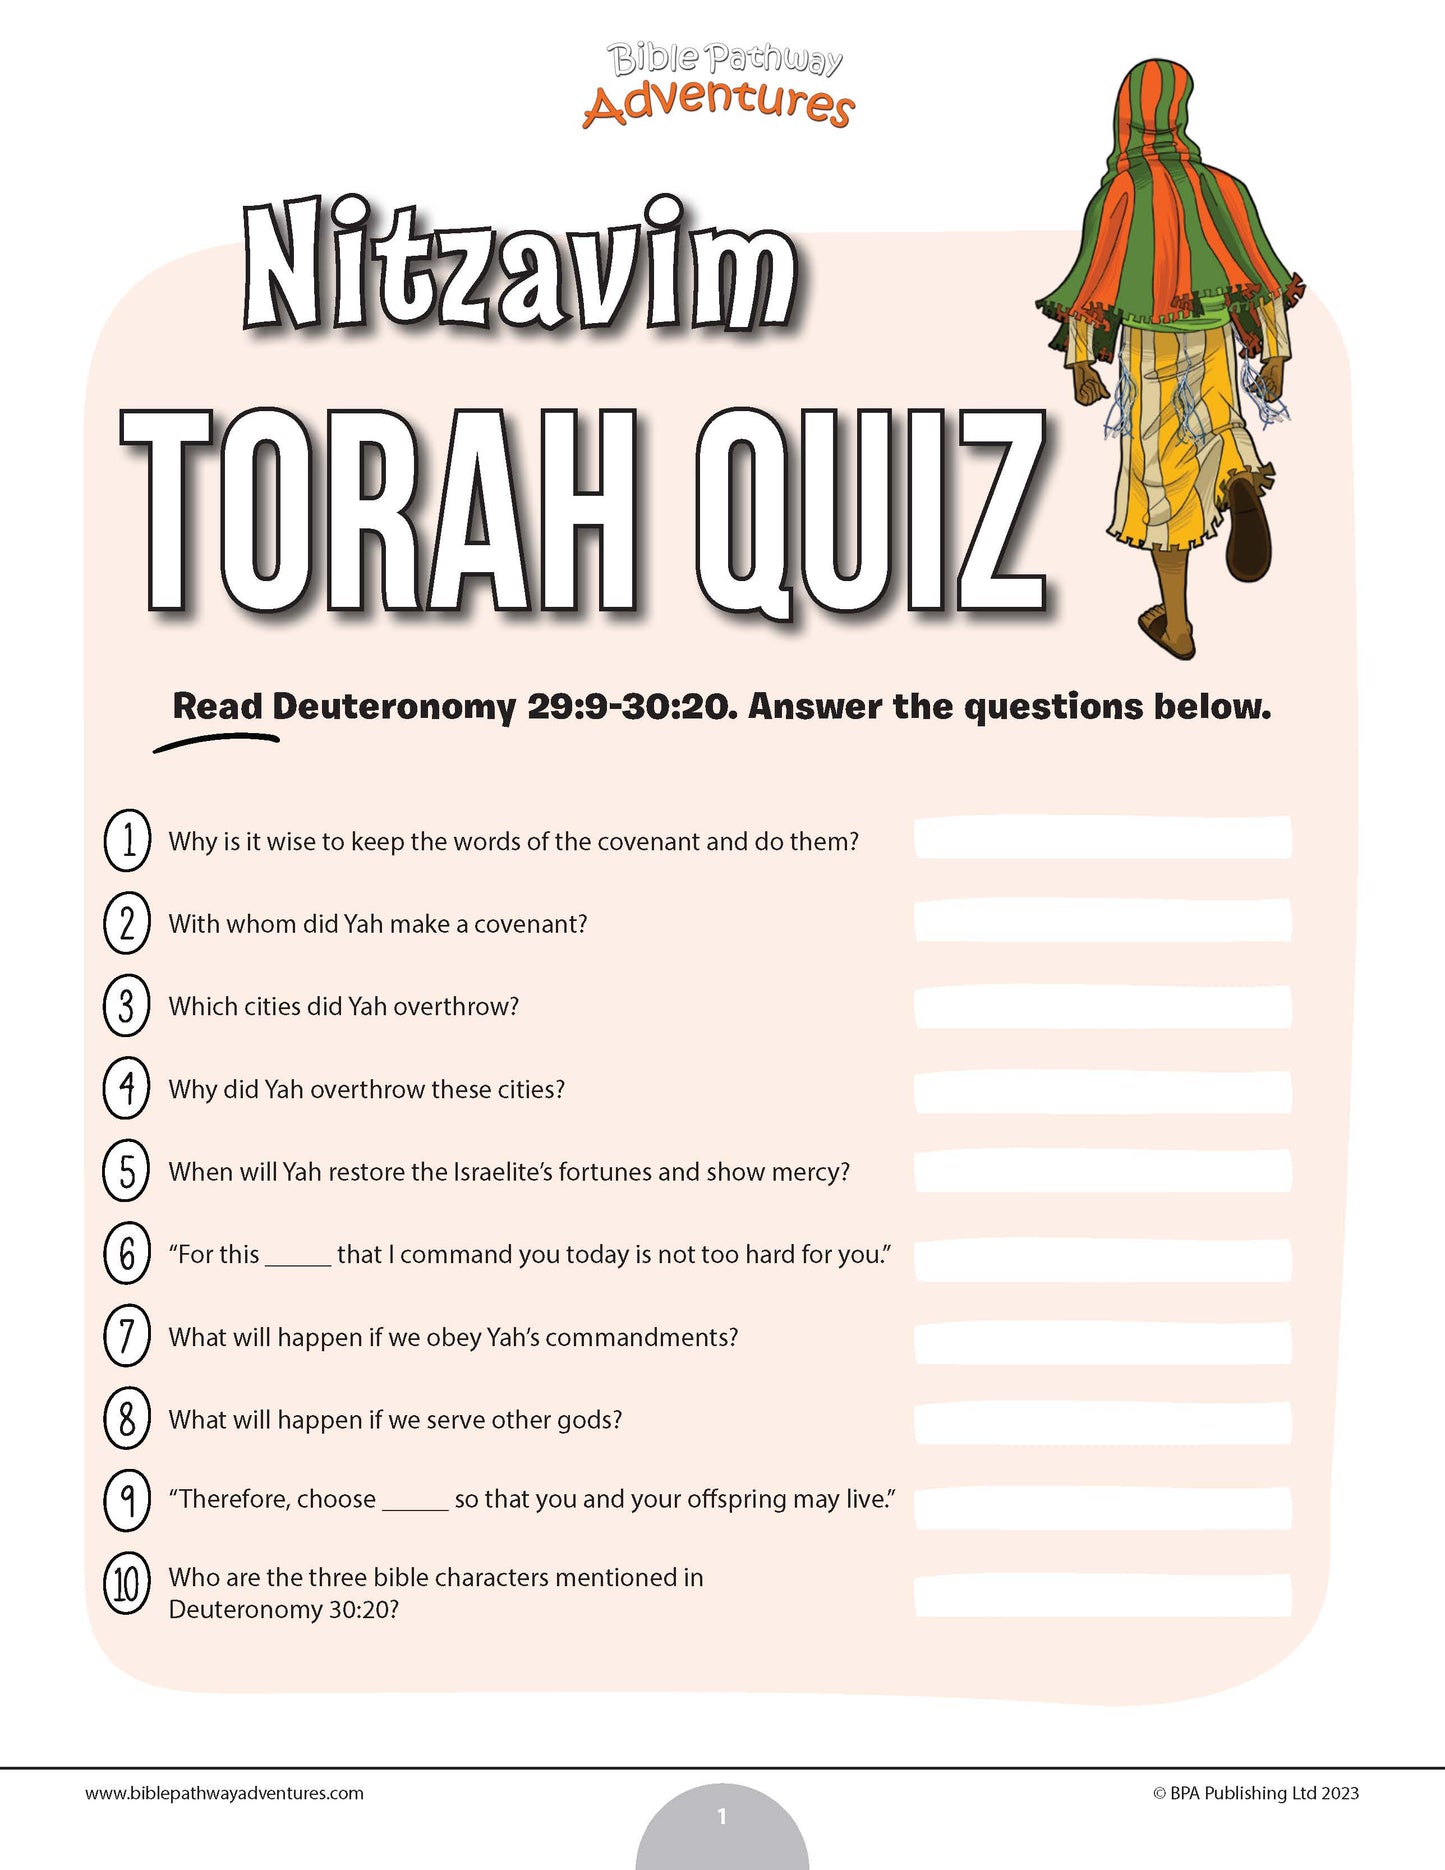 Cuestionario de Nitzavim Torá